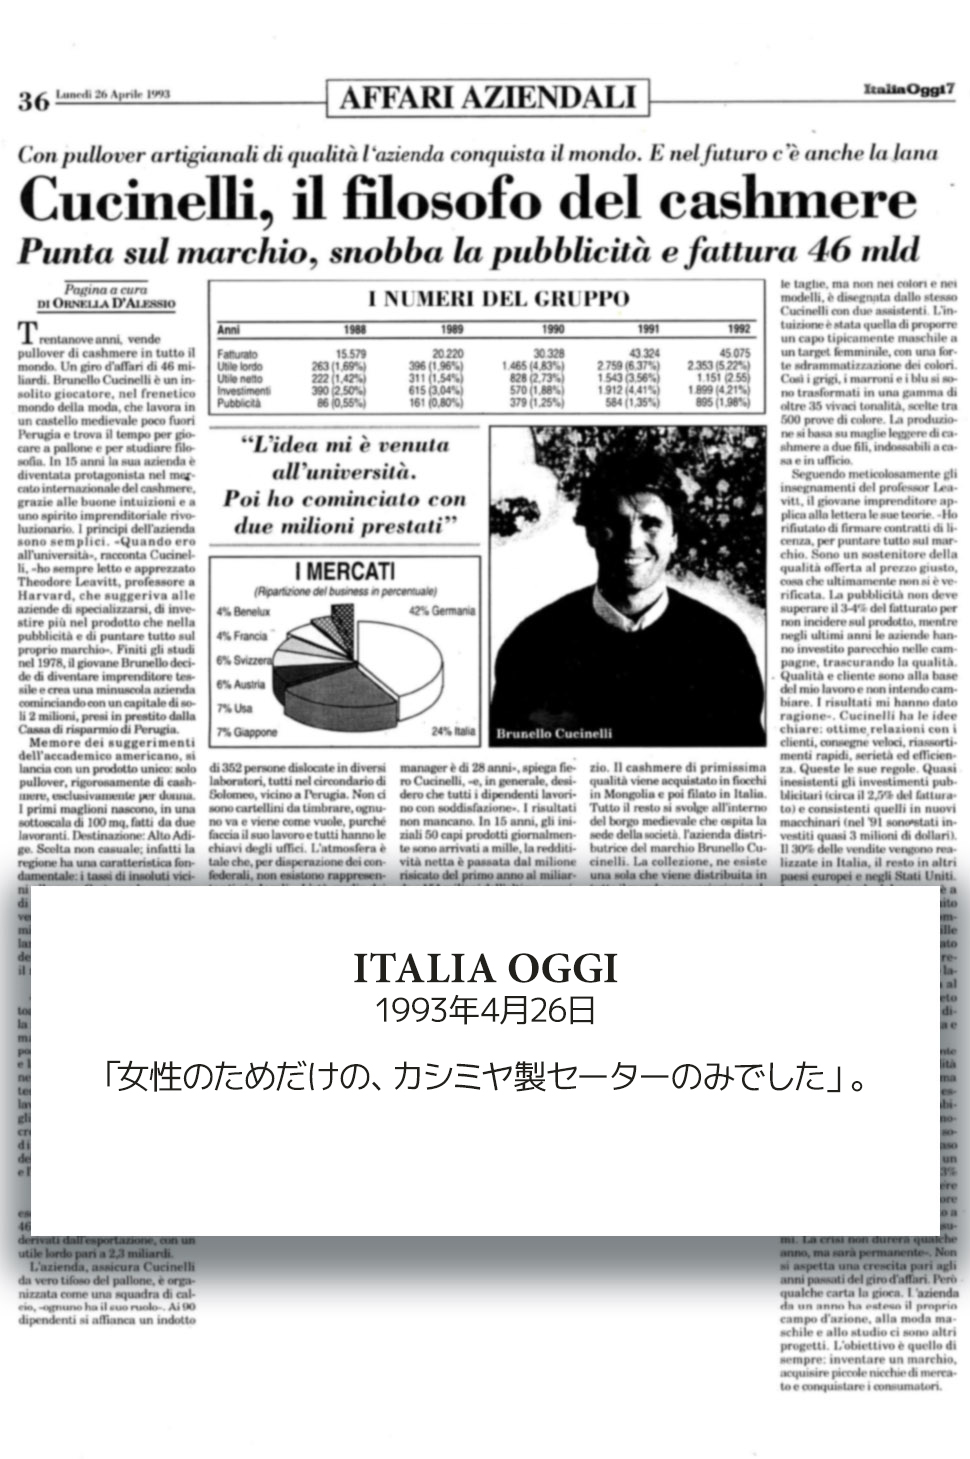 1993 Italia Oggi